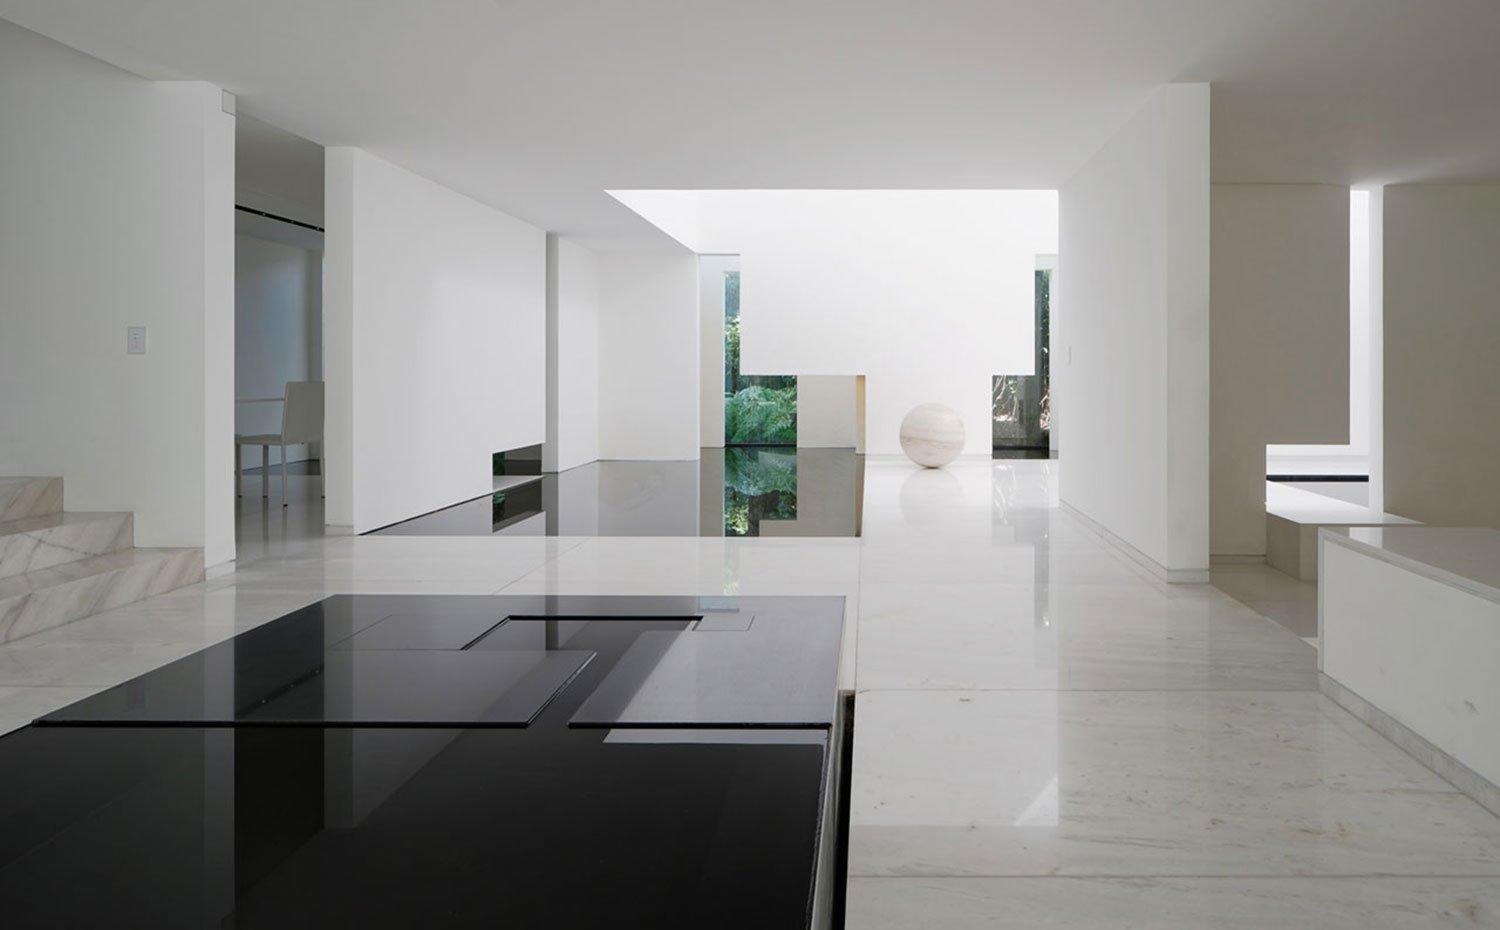 Sala con suelo de marmol, sobre de mesa negro, paredes en blanco, superficie de agua, esfera de mármol